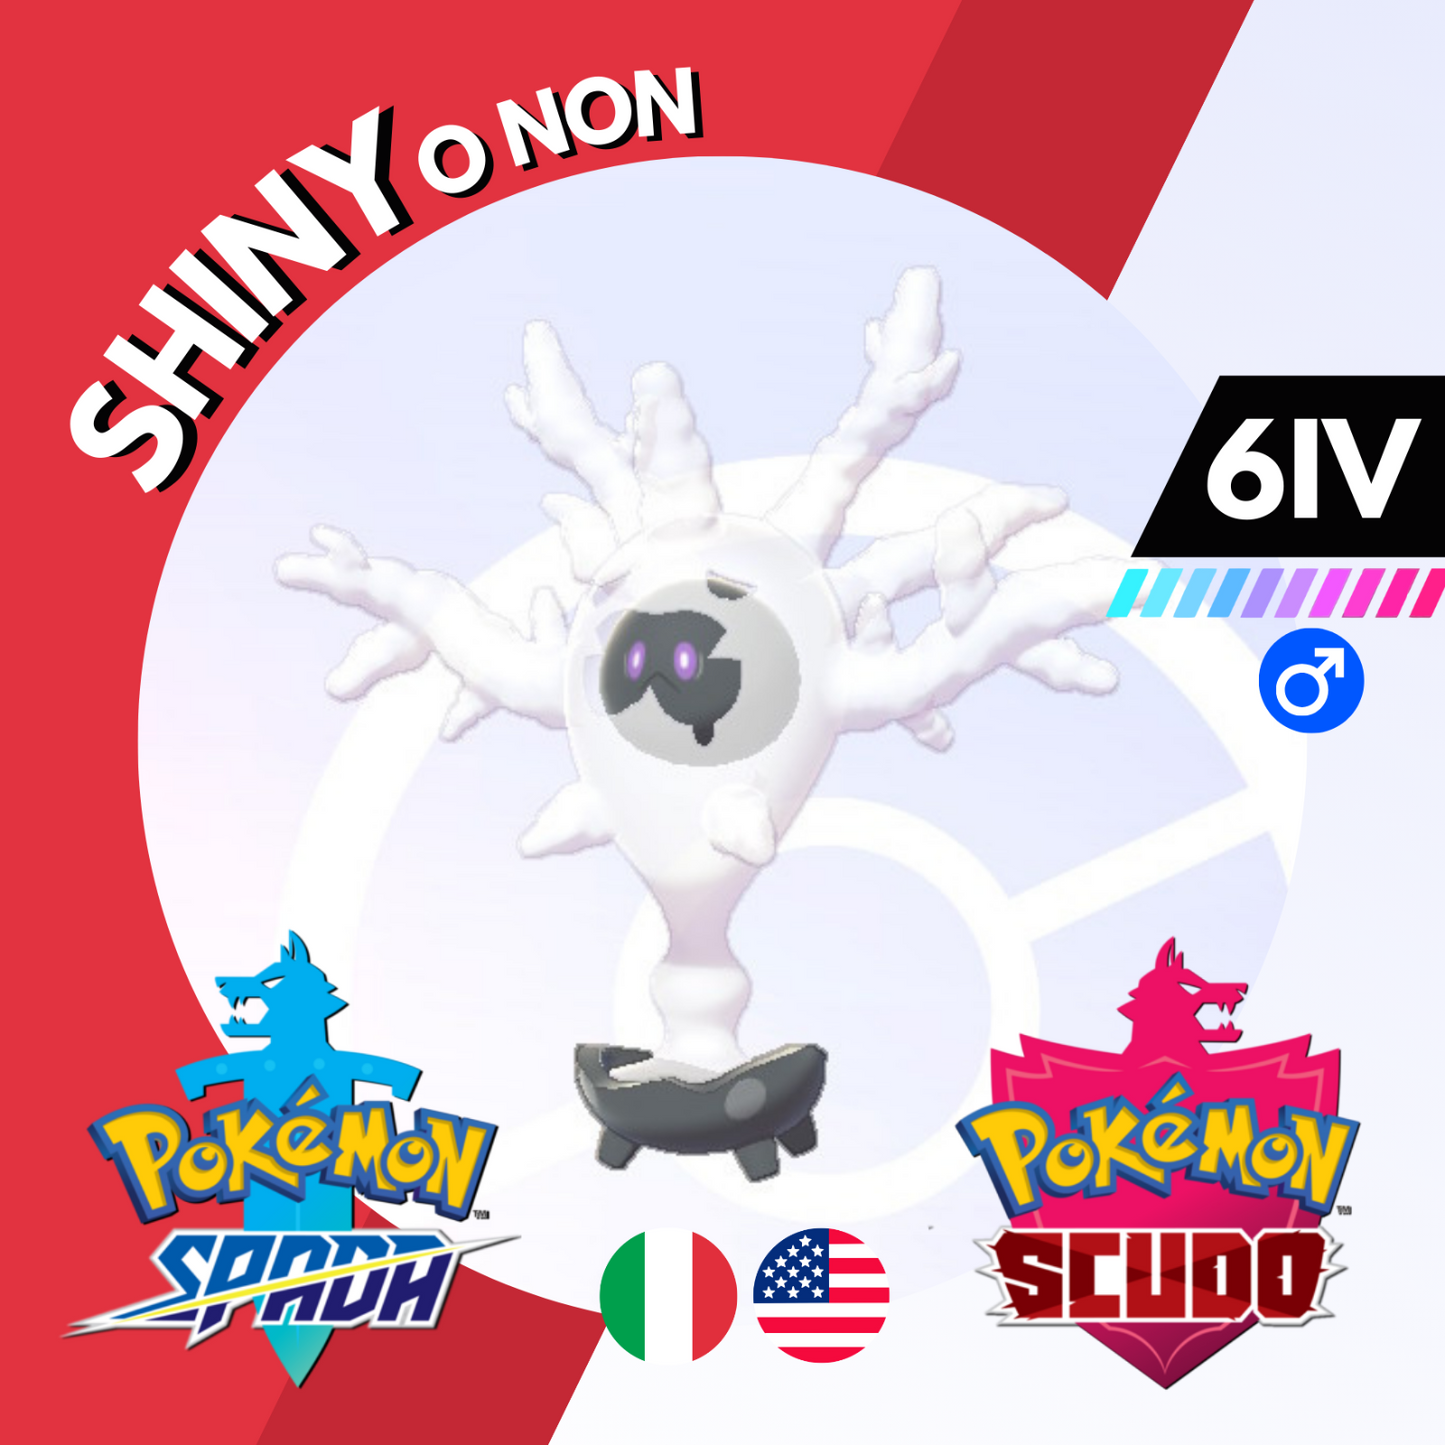 Cursola Shiny o Non 6 IV Competitivo Legit Pokemon Spada Scudo Sword Shield